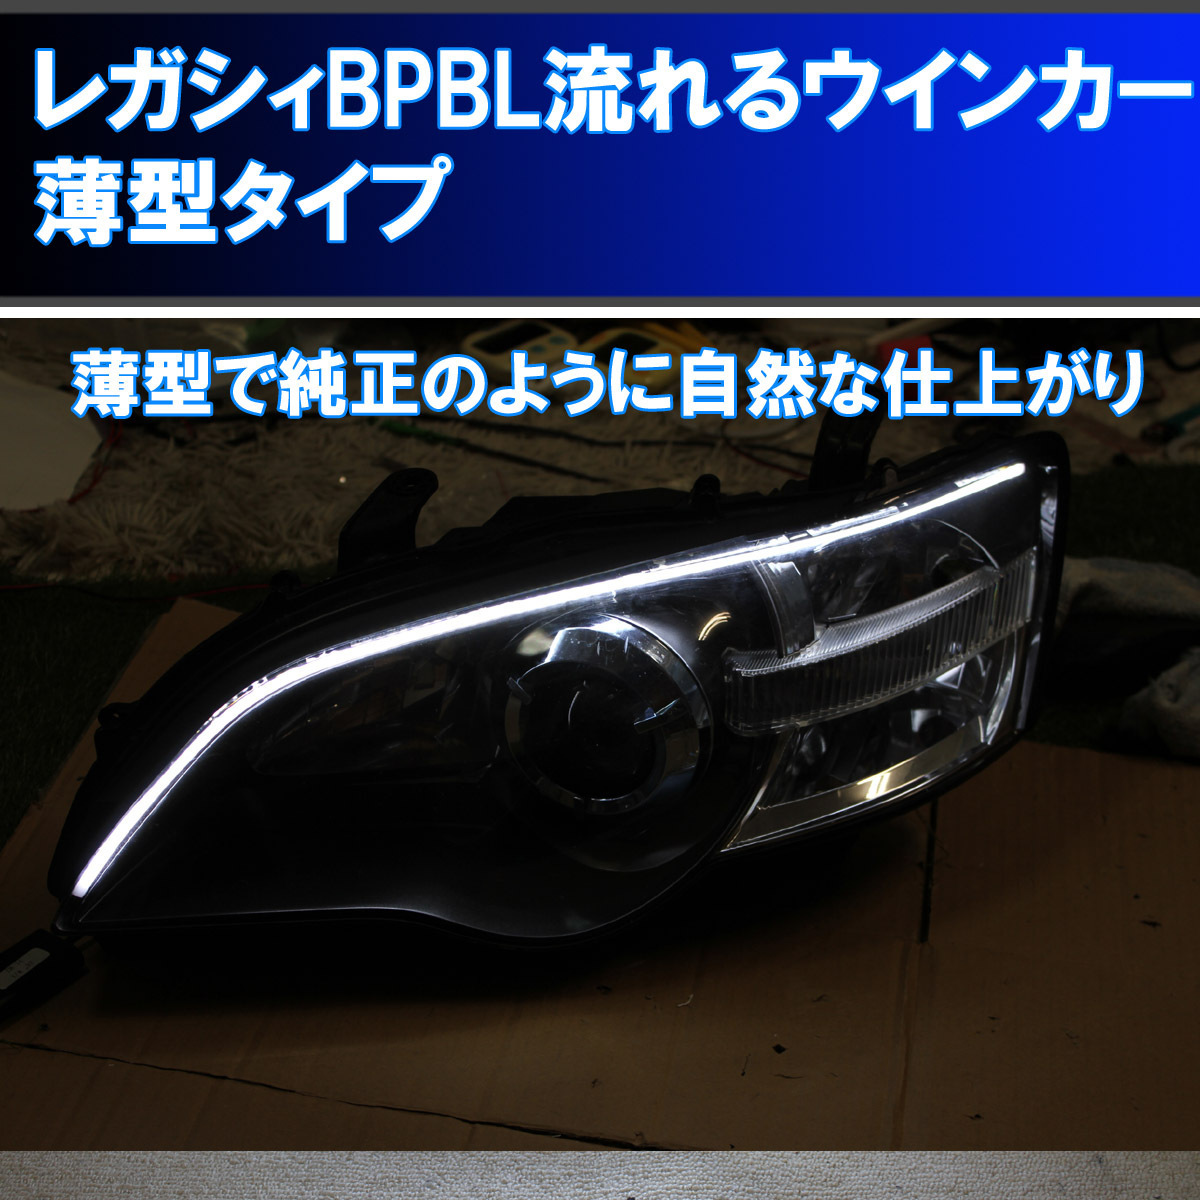 新作 ★レガシィ BP BL A型からF型 薄型 シーケンシャルウインカー アイライン 流れるウインカー デイライト